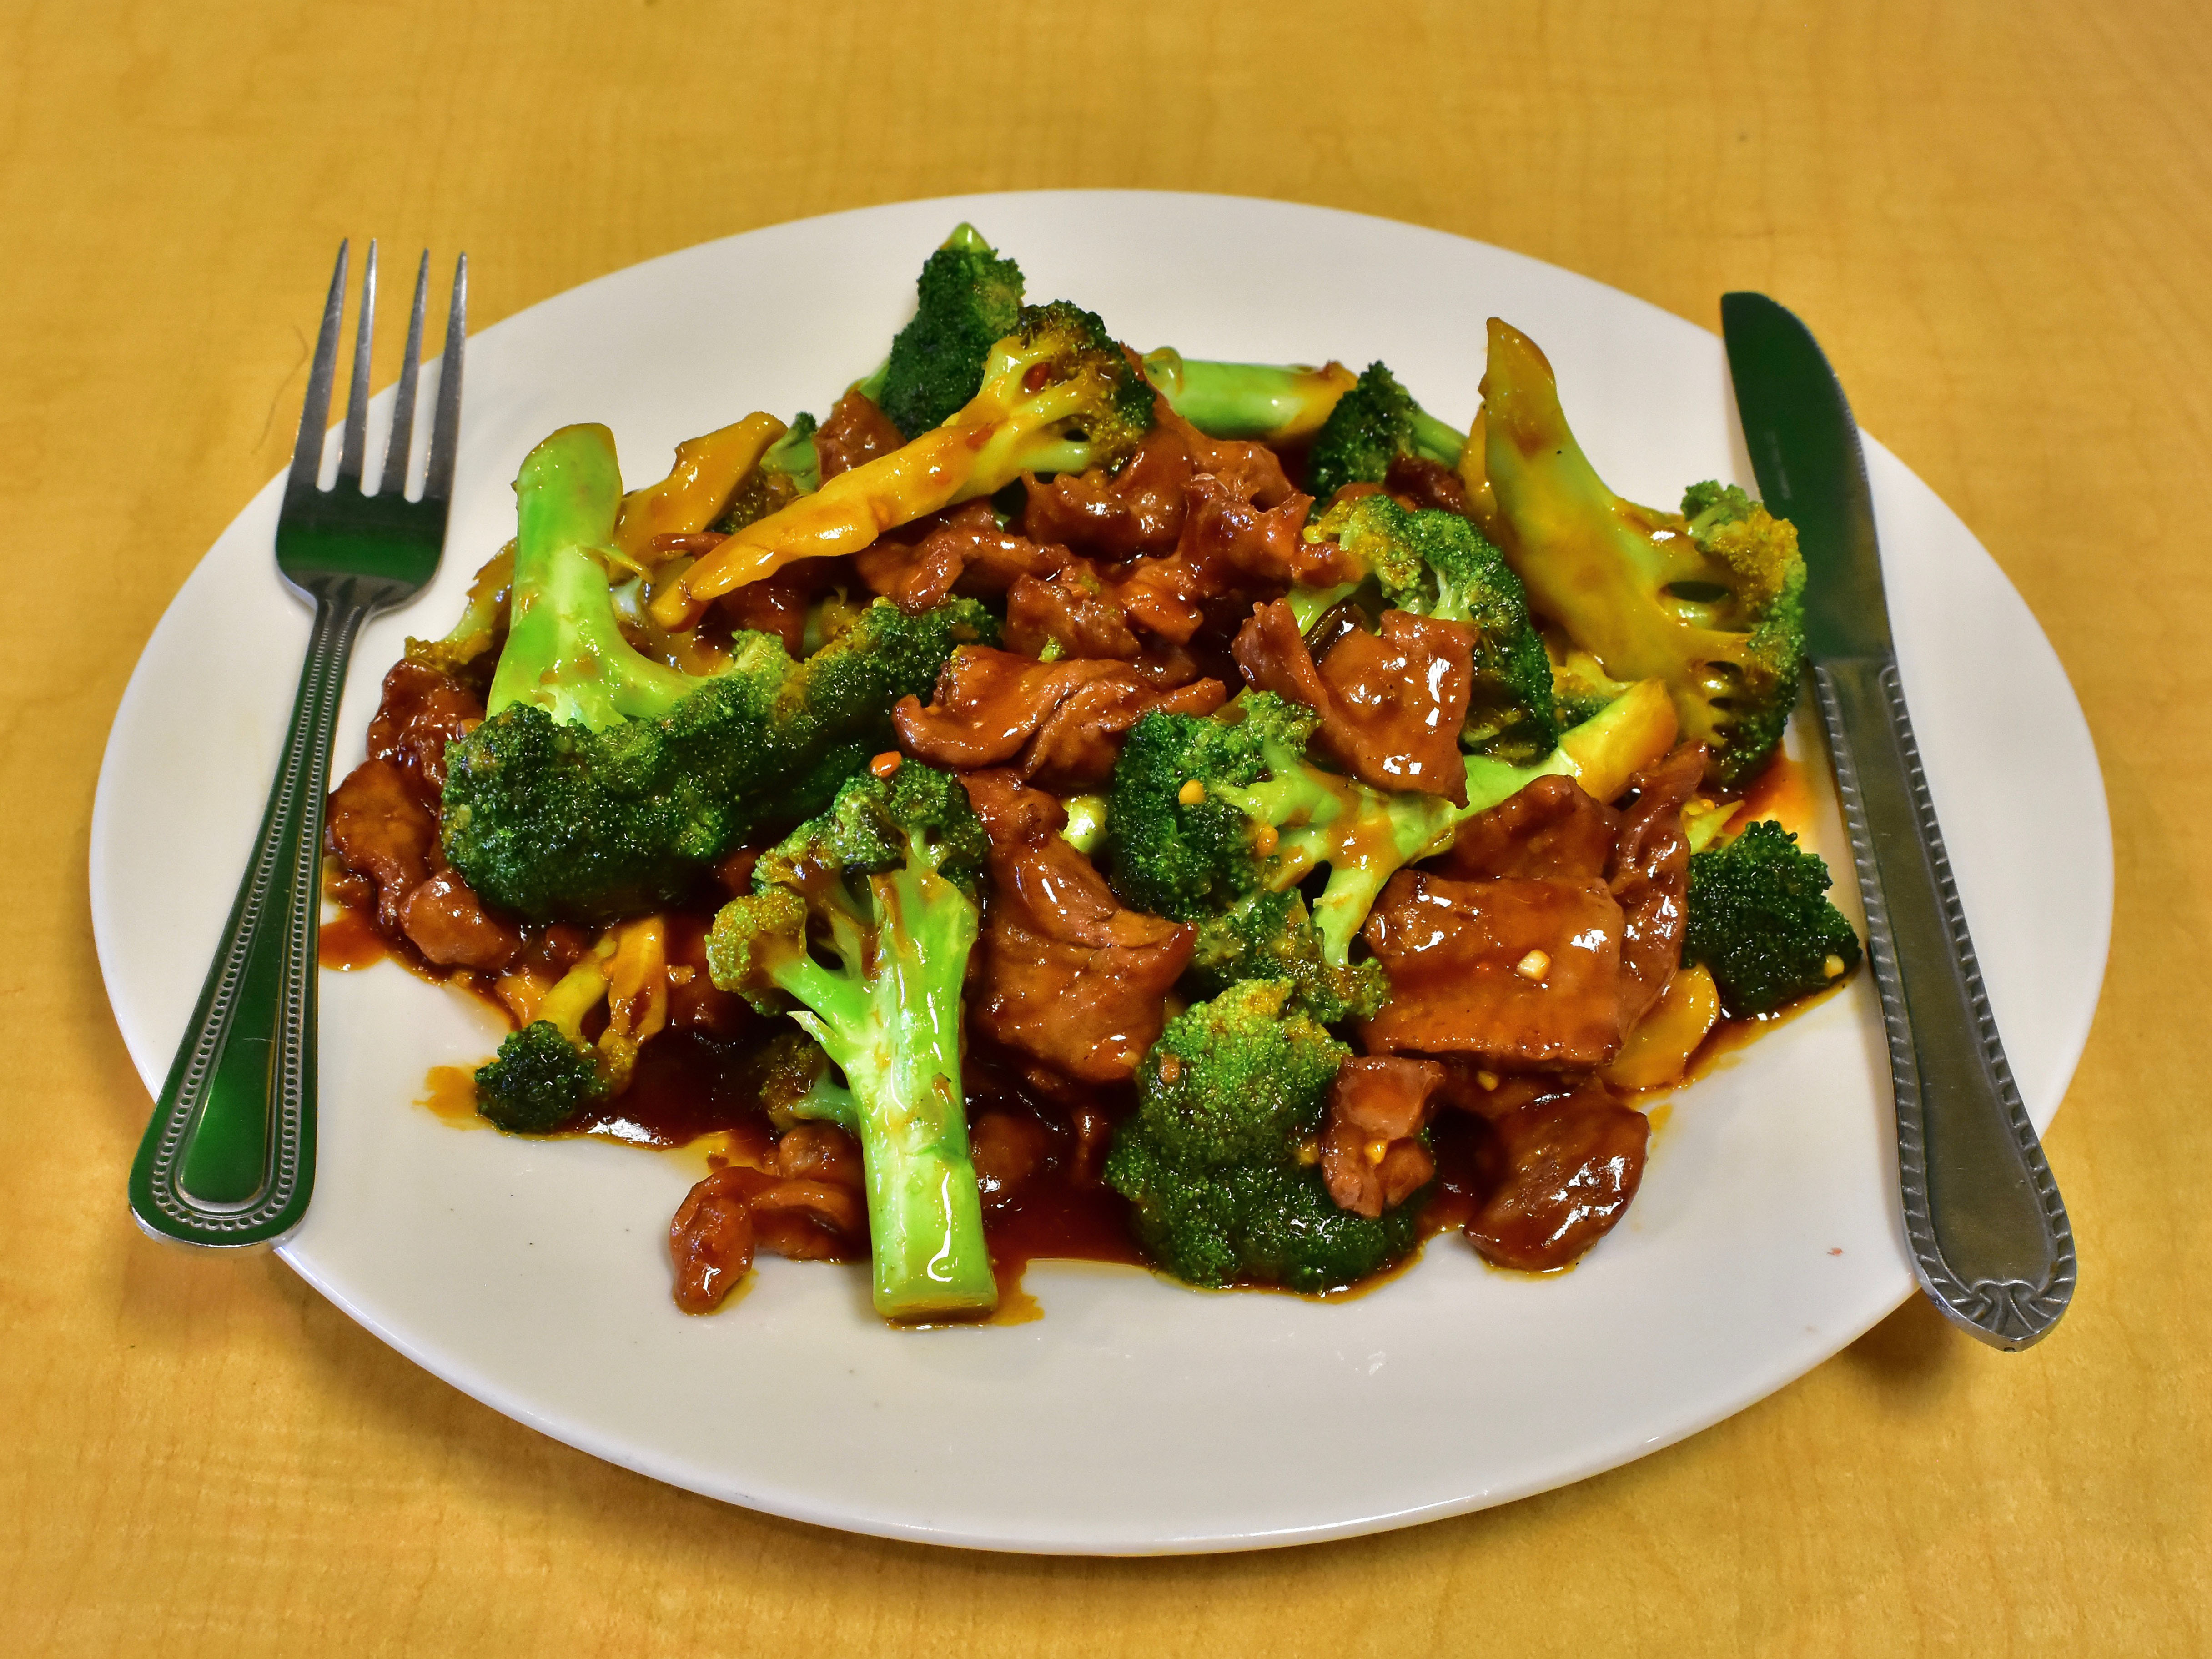 Order 59. Broccoli Beef food online from Peking Garden Restaurant store, El Paso on bringmethat.com